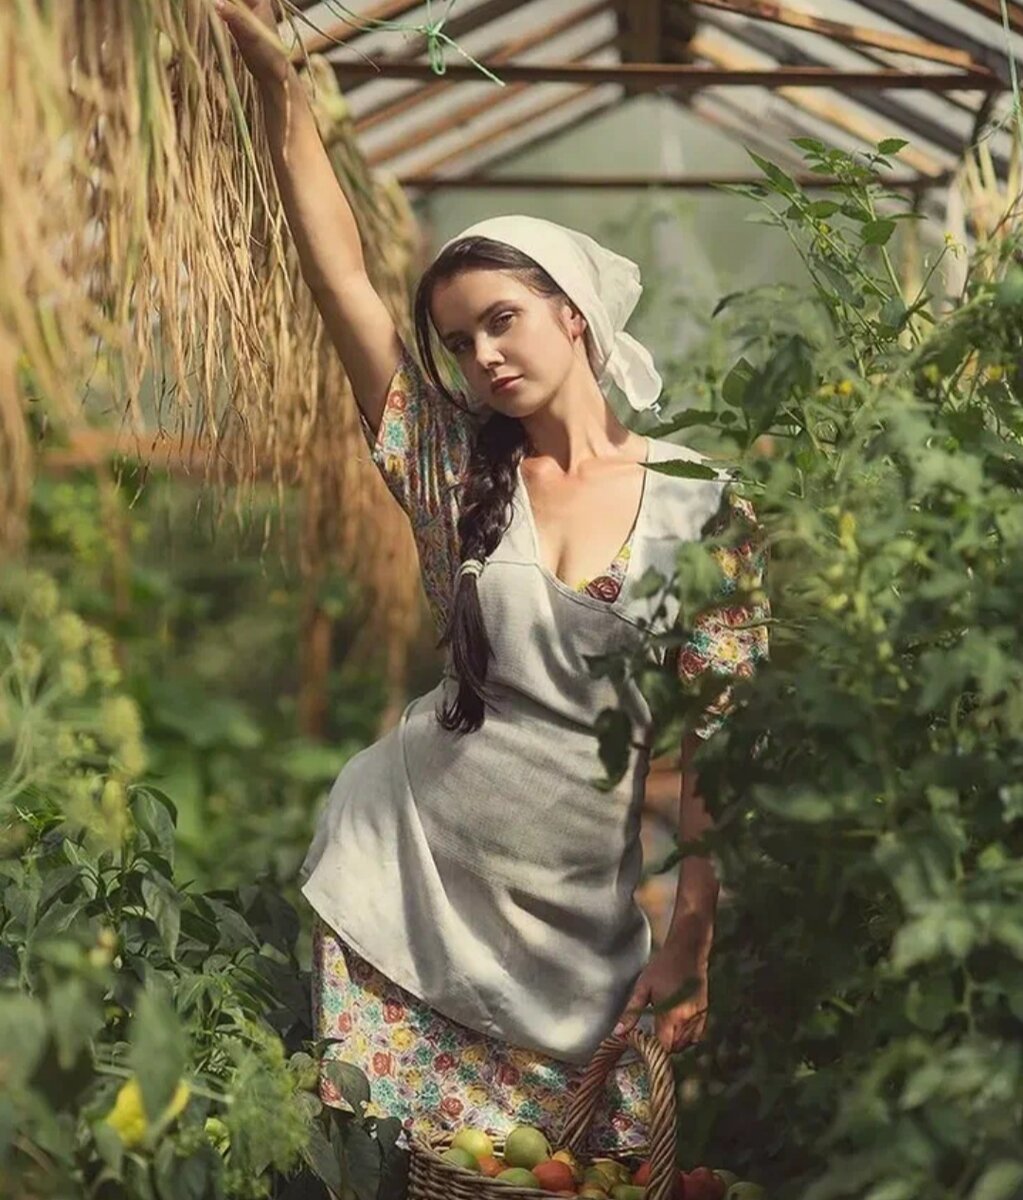 Пышные деревенские женщины. Ксюша Егорова фотомодель барышня крестьянка. Фотограф Дэвид Дубницкий.